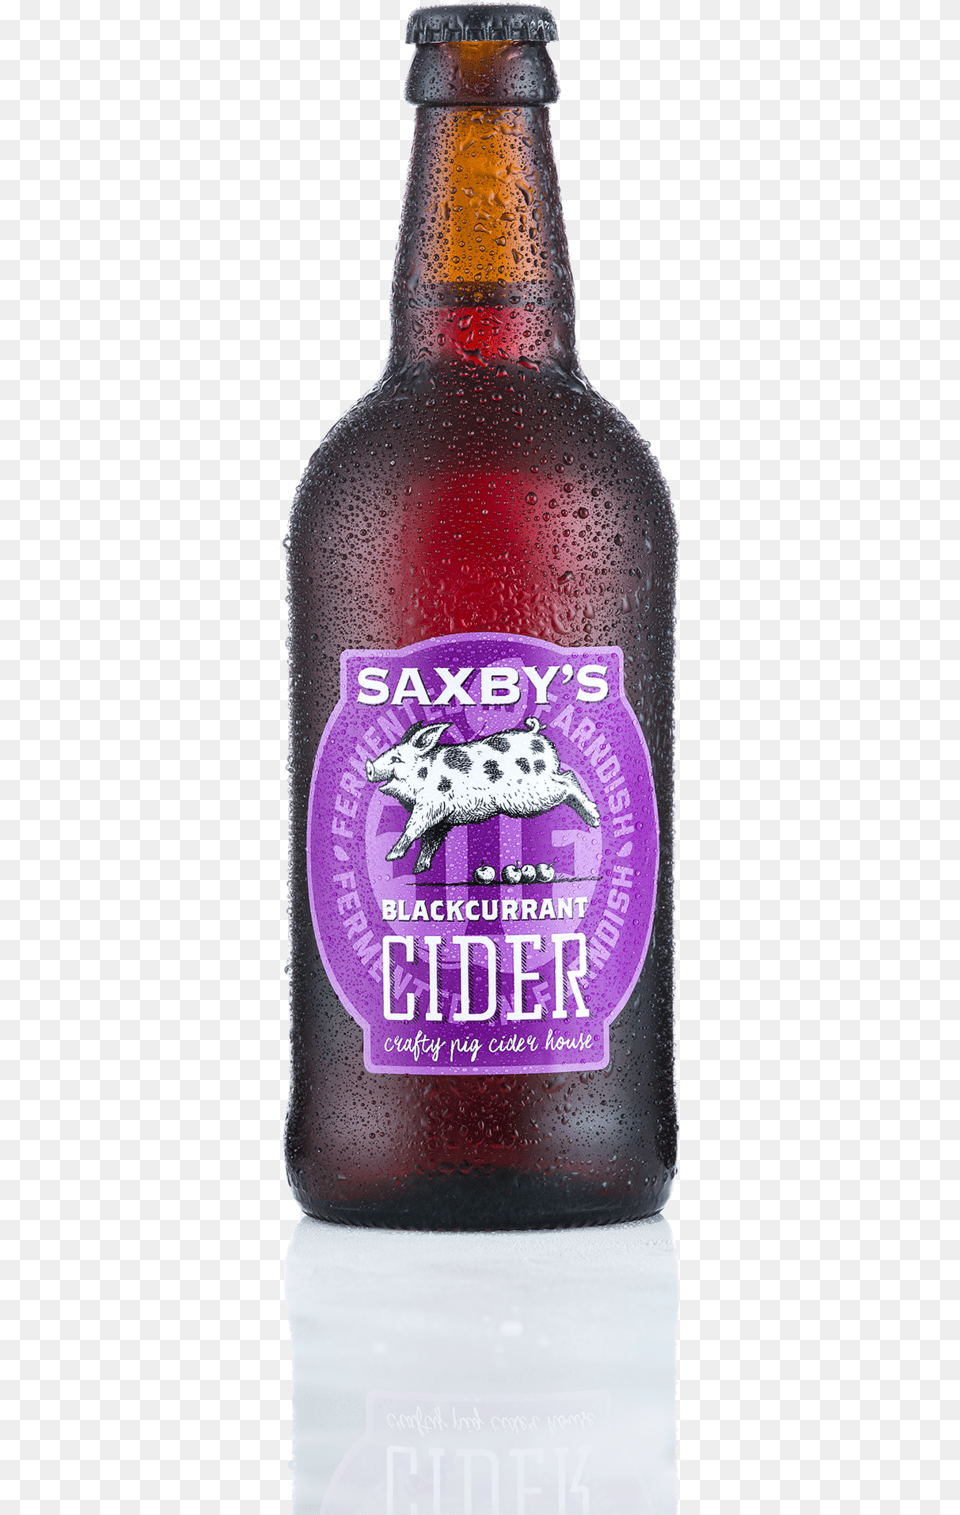 Saxbys Cider Blackcurrant Bottle Glass Bottle, Alcohol, Beer, Beer Bottle, Beverage Png Image